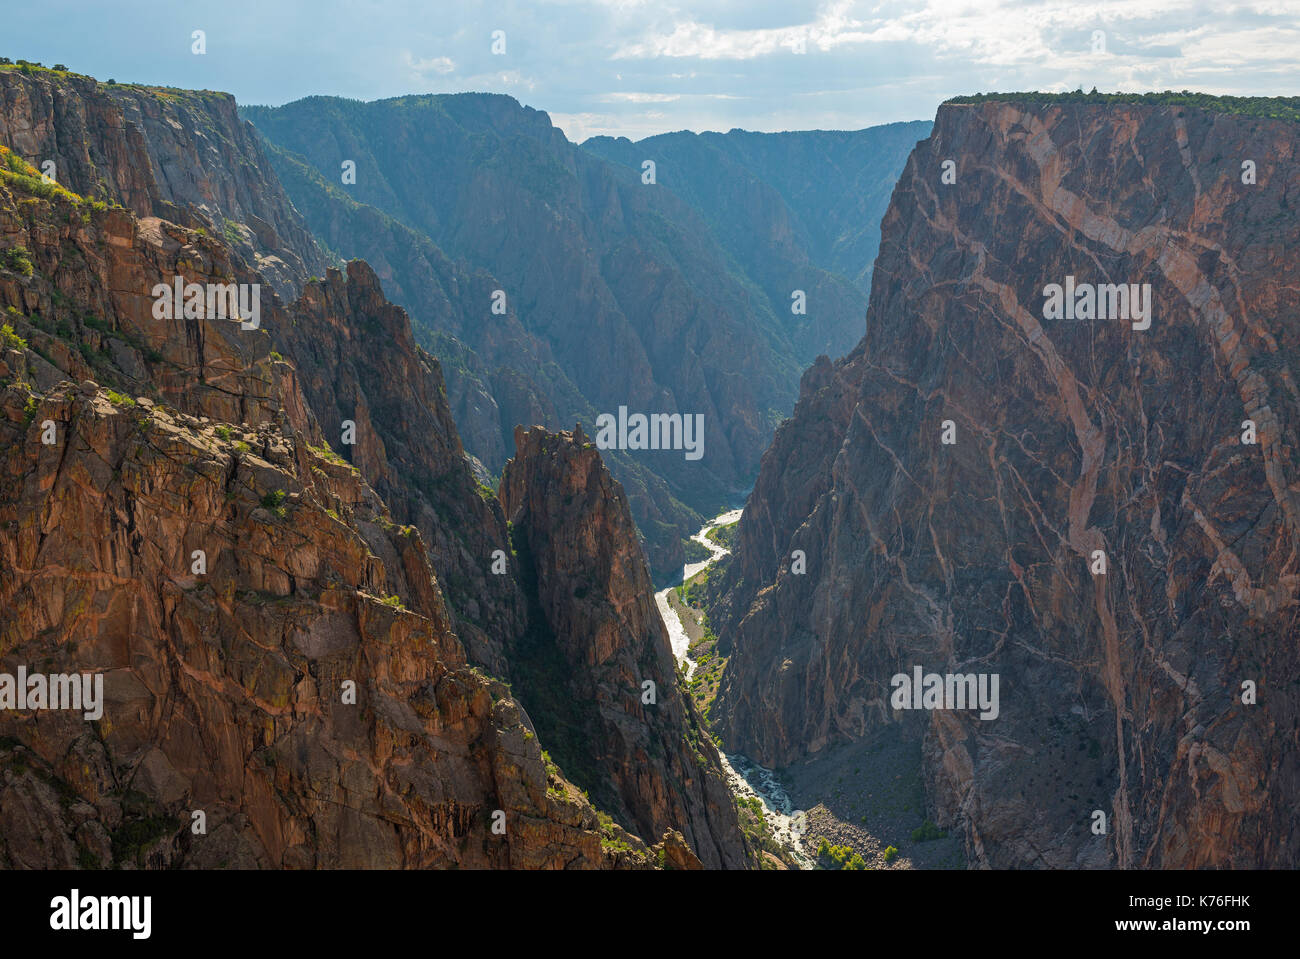 Les falaises de granit du Black Canyon of the Gunnison avec les deux dragons et les mystérieux Gunnison River coupant à travers le rock, Colorado, USA. Banque D'Images